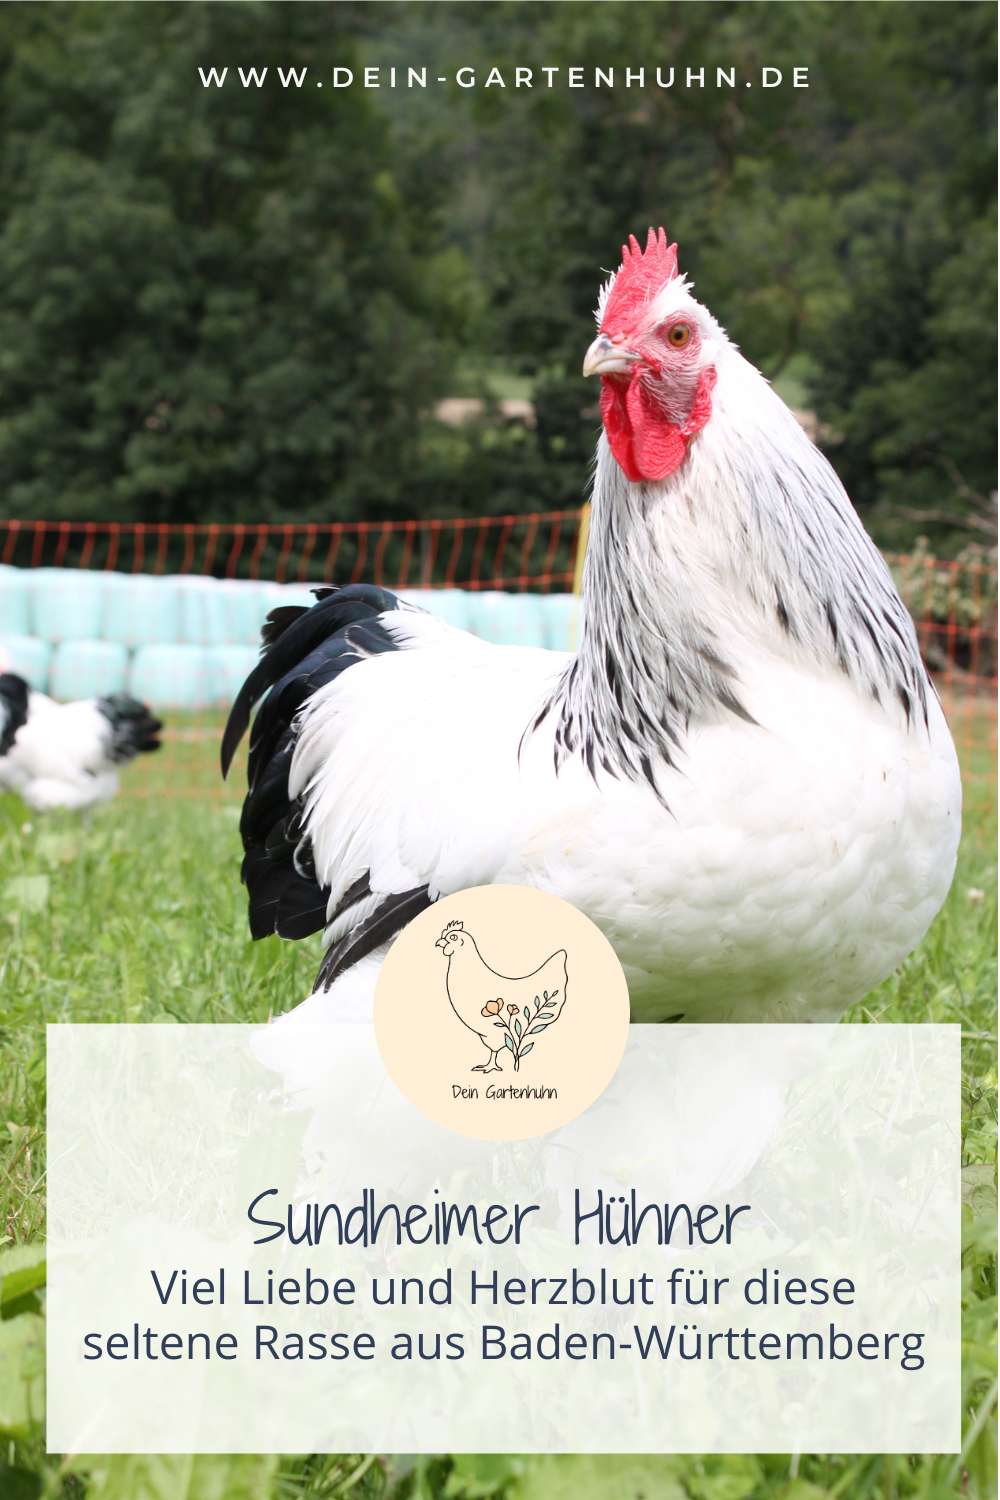 Sundheimer Hühner werden mit viel Liebe und Herzblut gezüchtet, denn sie sind eine seltene Hühnerrasse aus Baden-Württemberg.